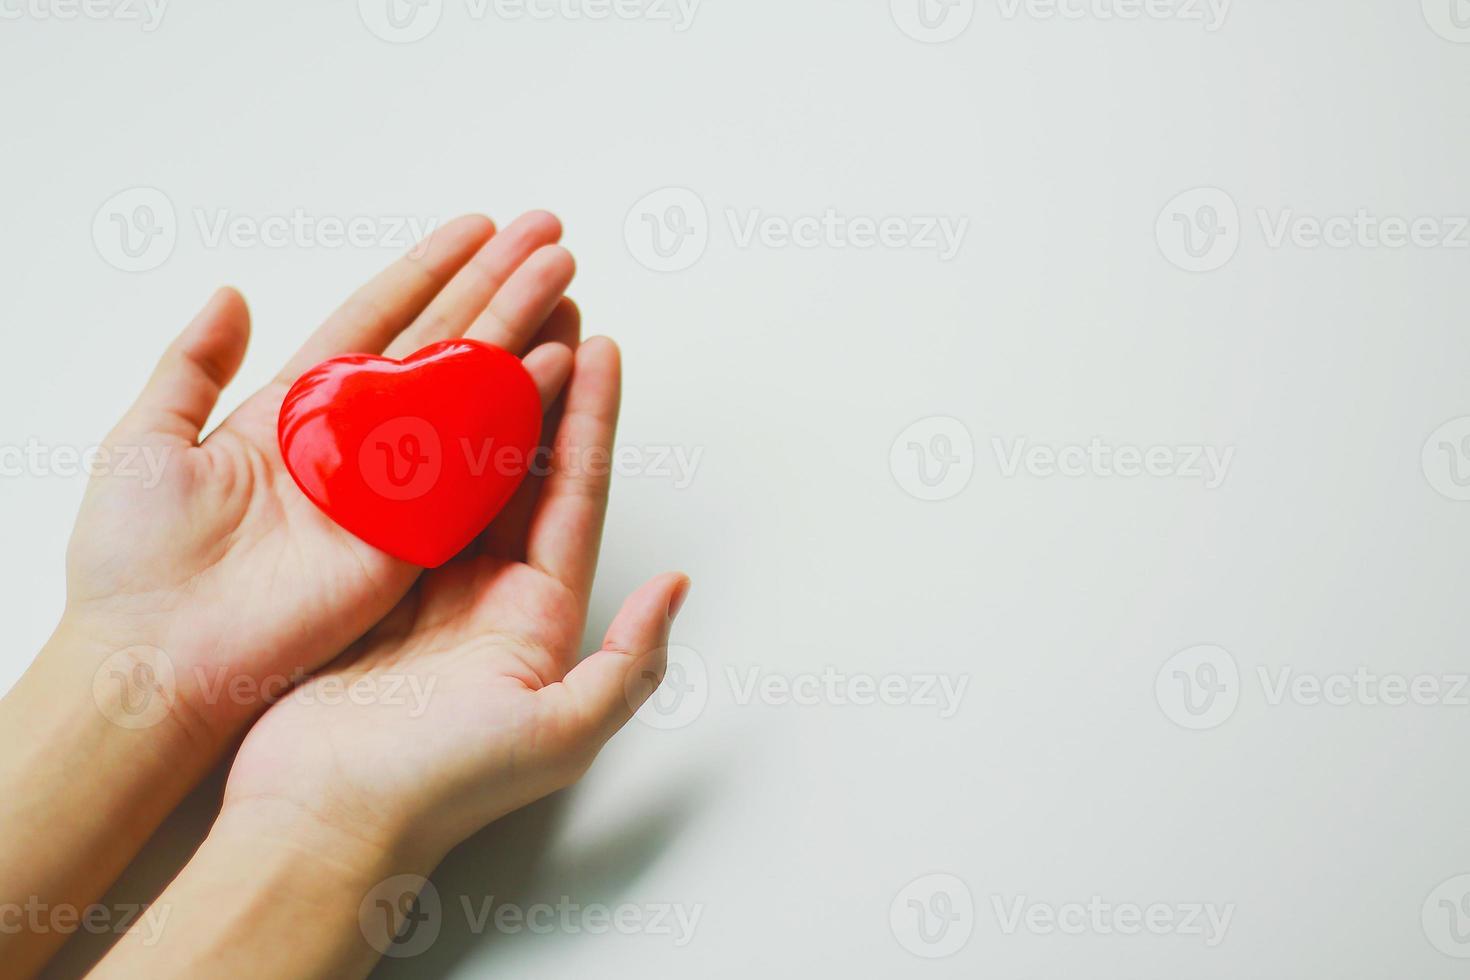 een vrouw die een rood hart op haar handpalm zet met een witte achtergrond. donatie idee foto